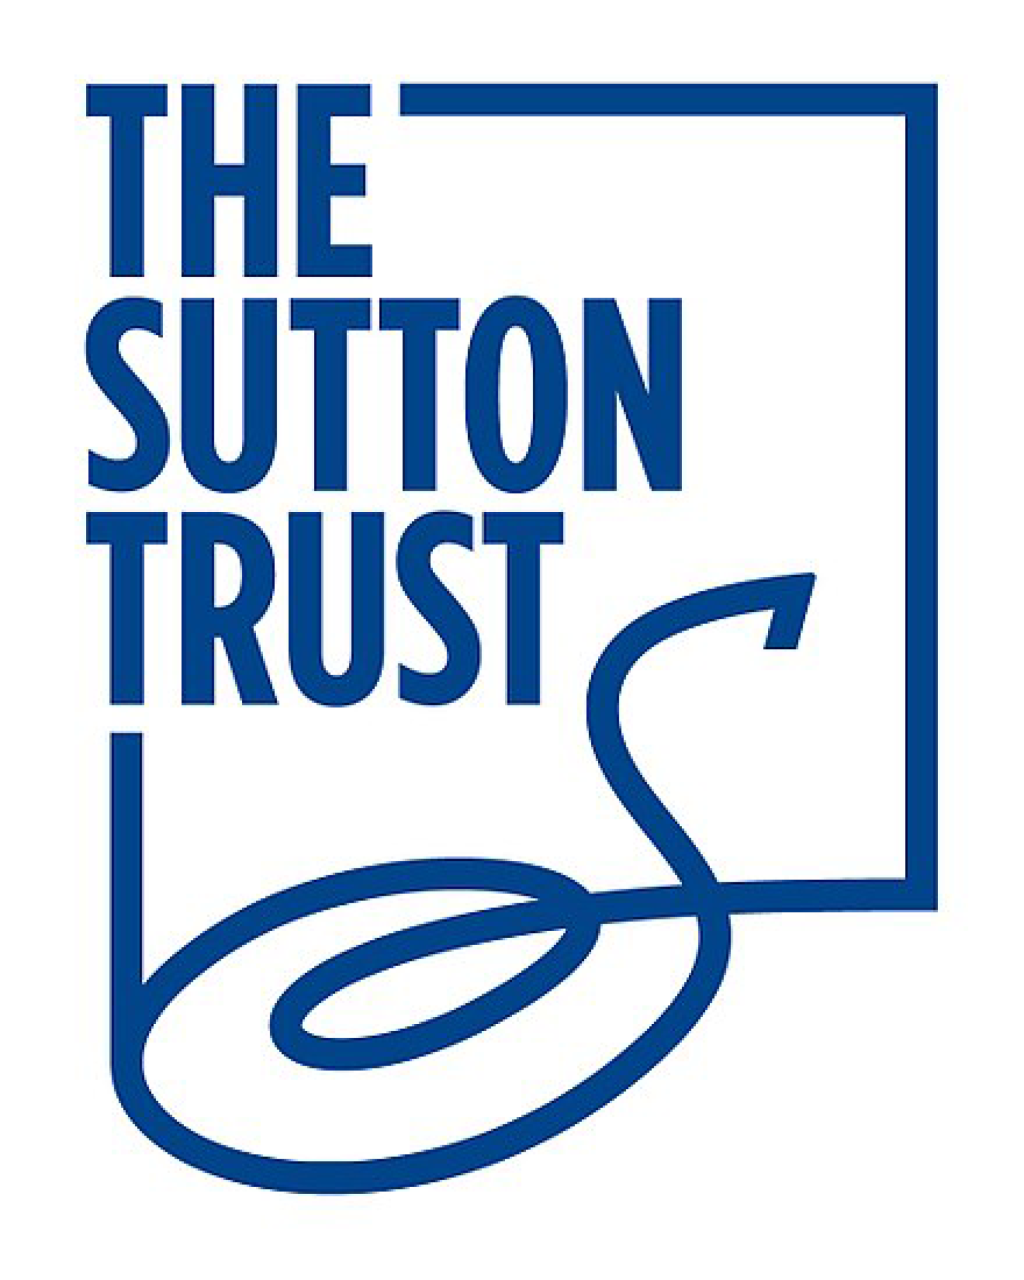 Sutton Trust logo.